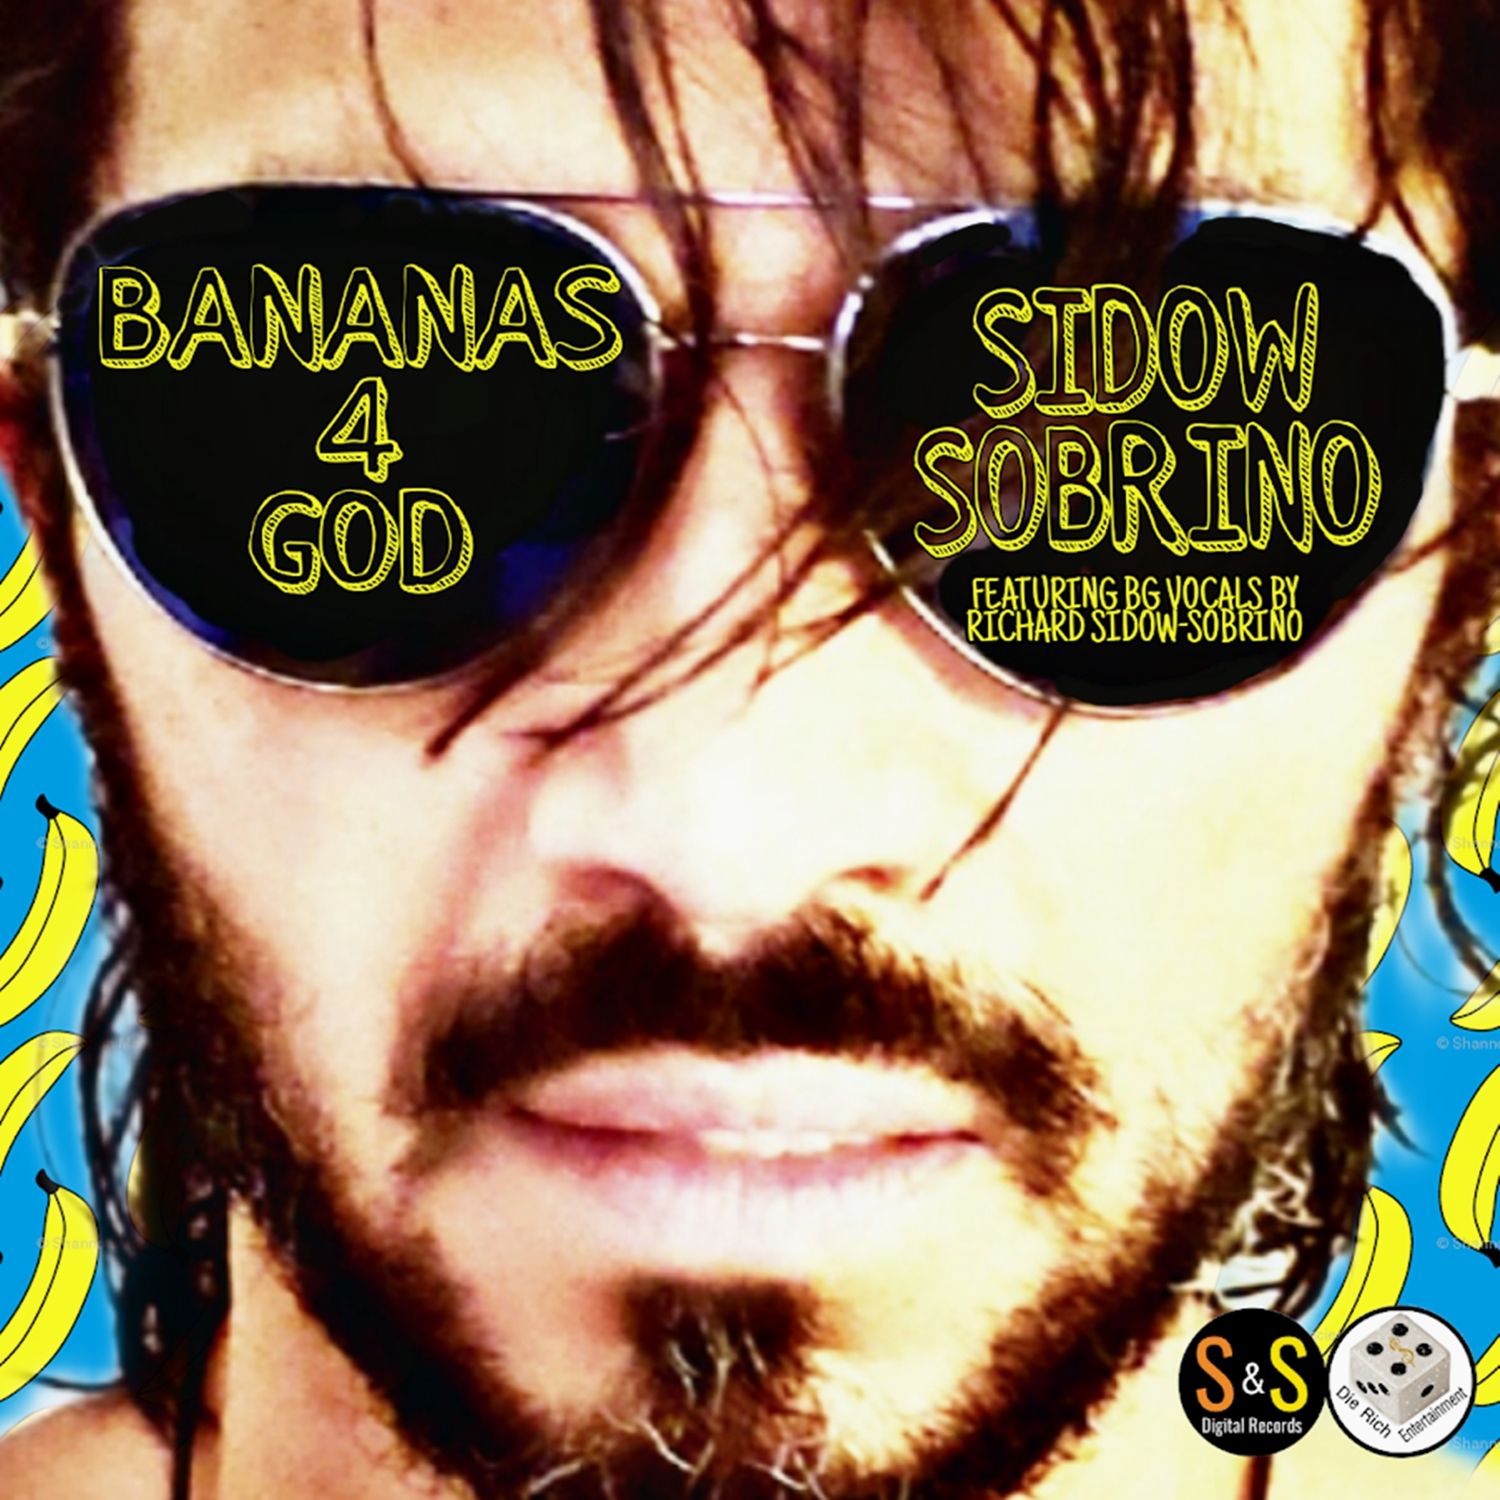 Sidow Sobrino - Bananas For God -Single Art Cover